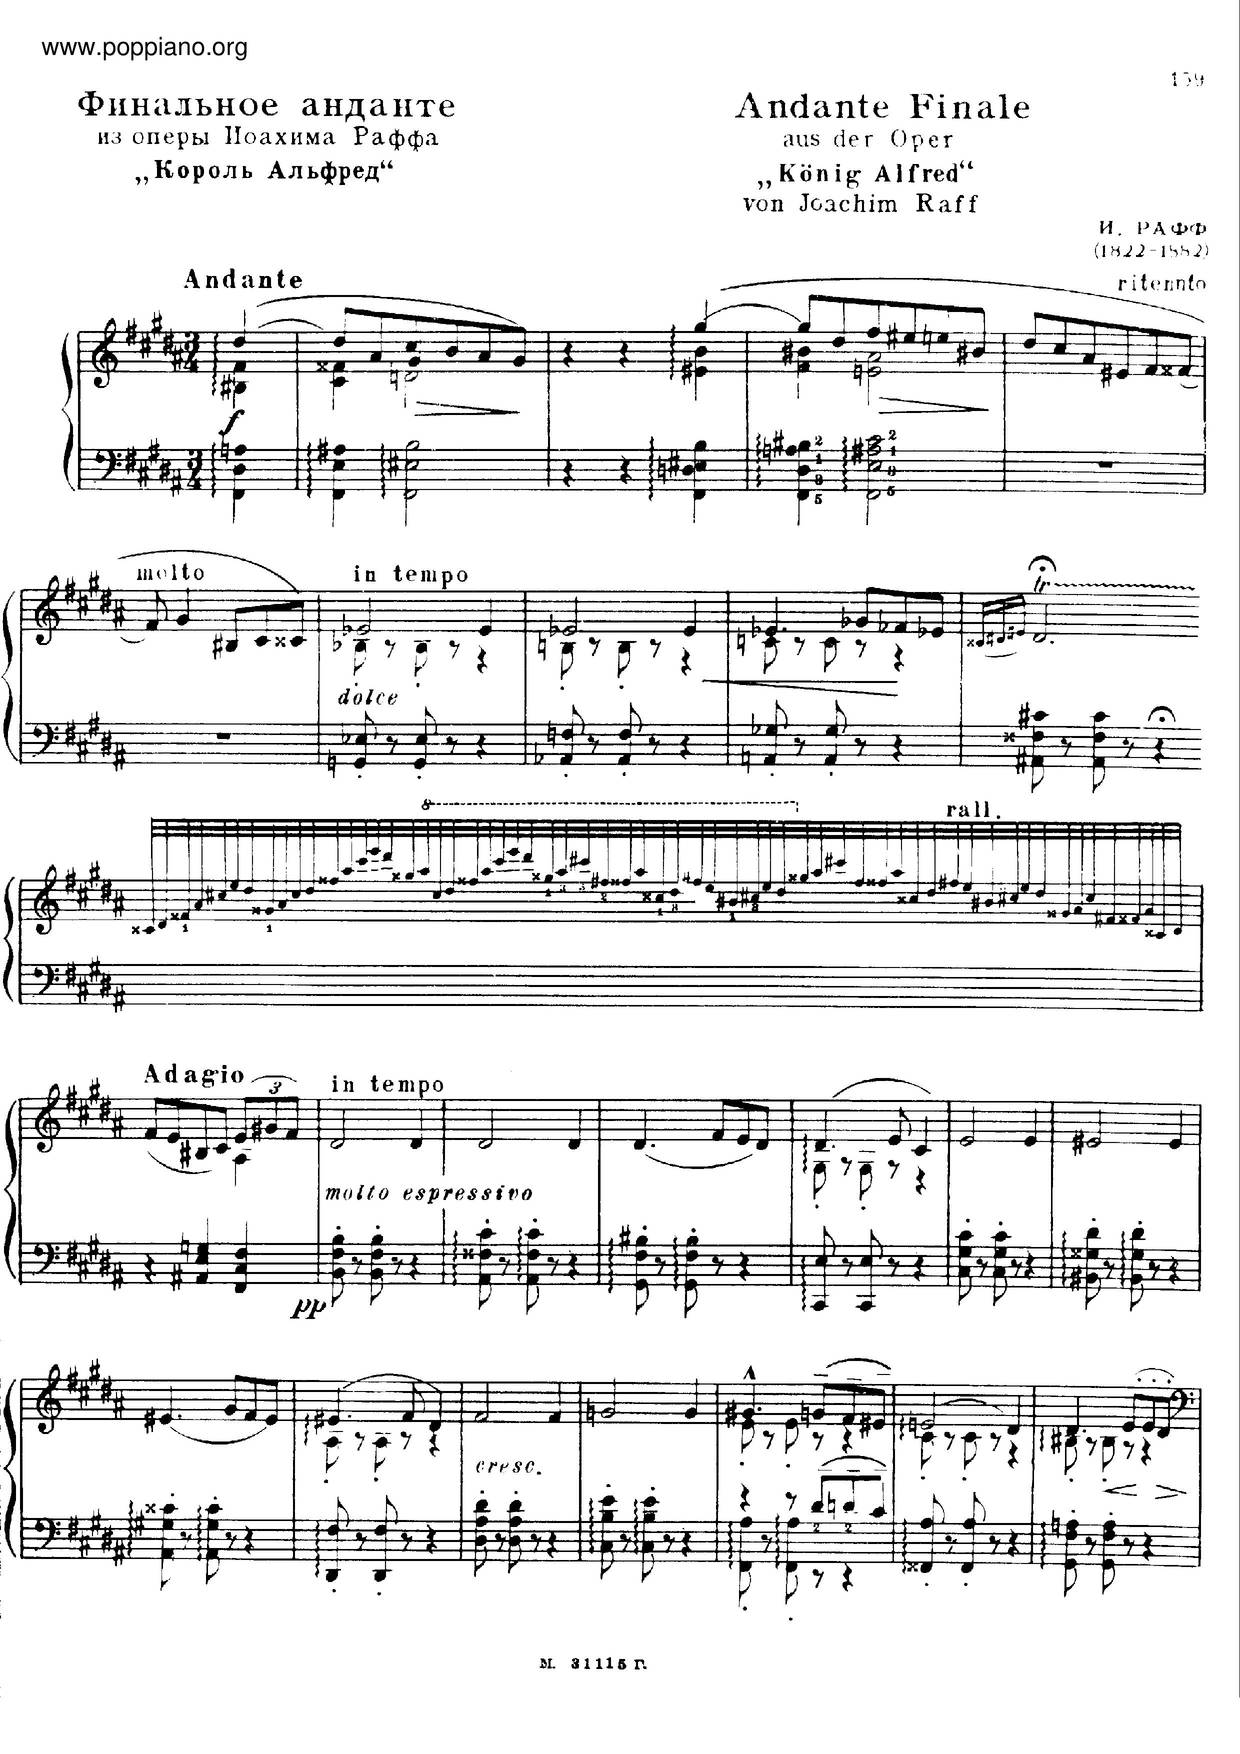 Andante Finale Und Marsch Aus Der Oper König Alfred, S.421 Score